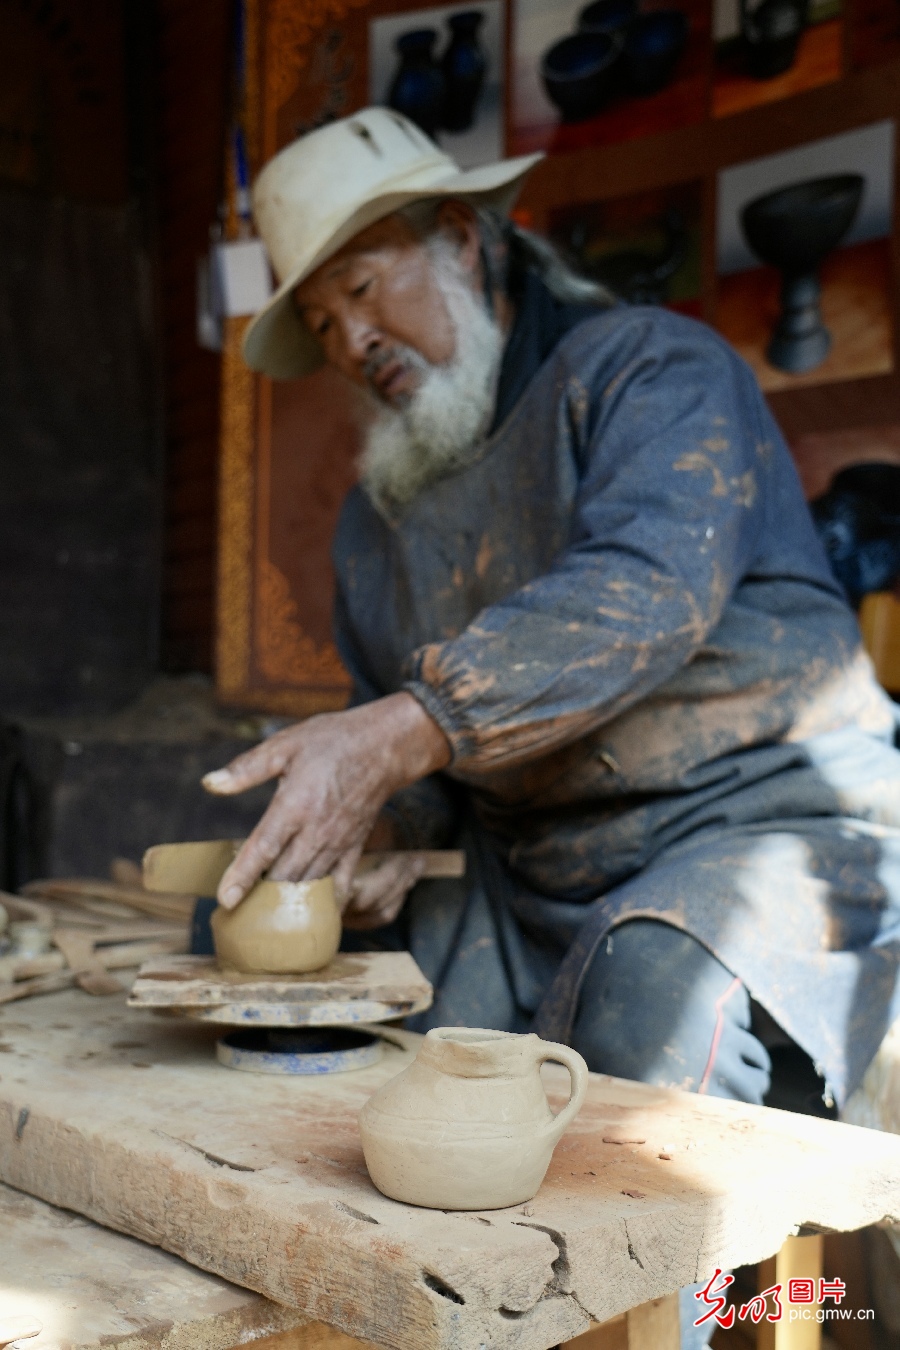 【世界的香格里拉】藏族黑陶烧制技艺:古老文化的传承与焕新